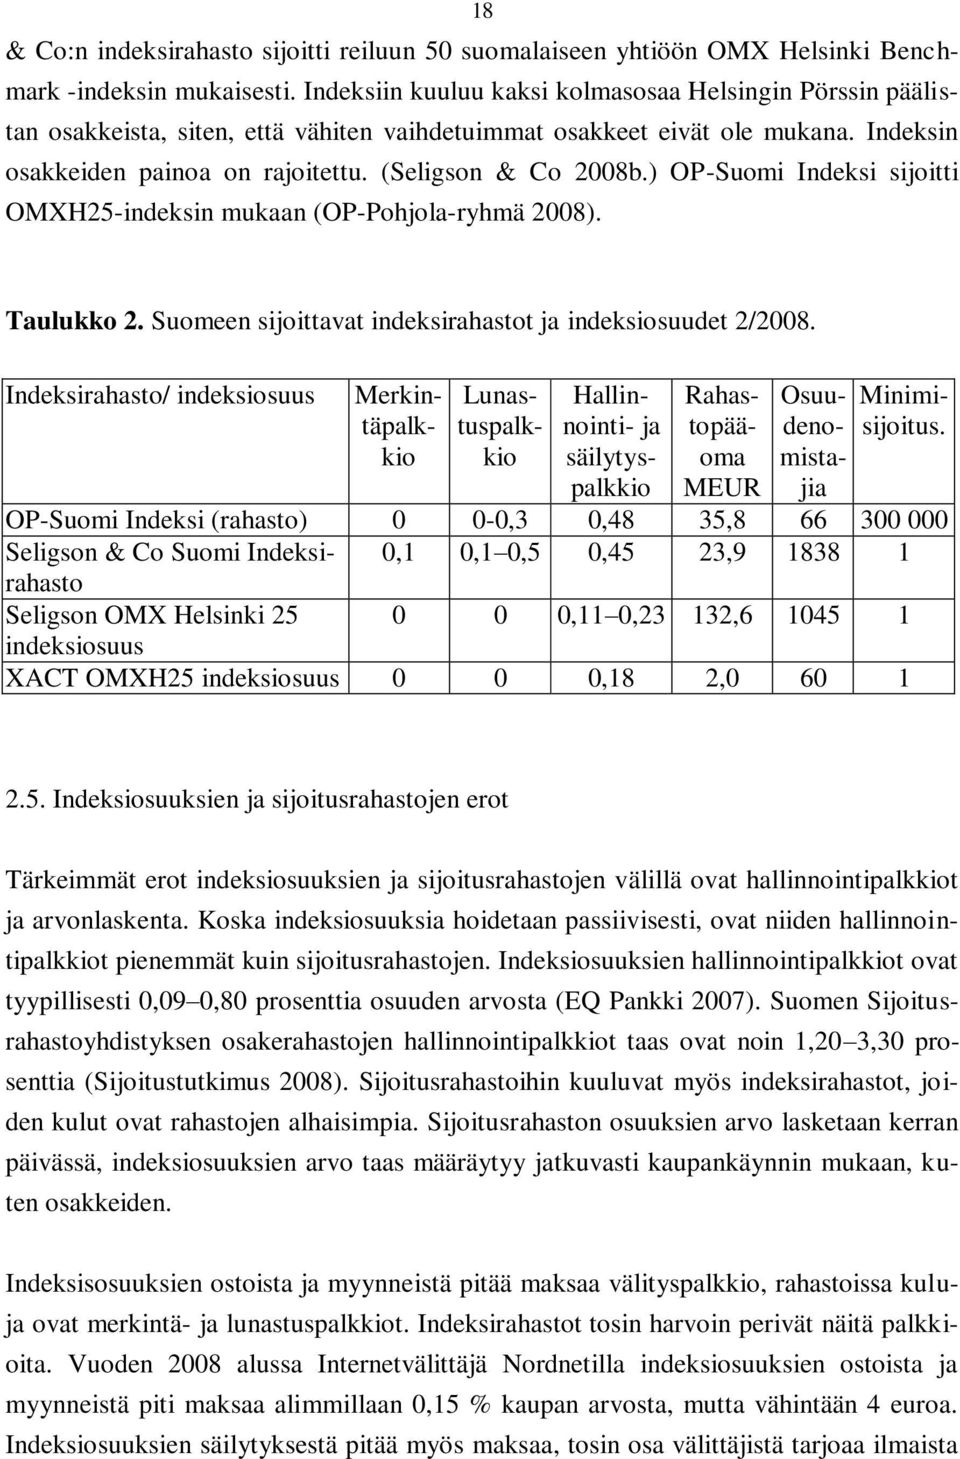 ) OP-Suomi Indeksi sijoitti OMXH25-indeksin mukaan (OP-Pohjola-ryhmä 2008). Taulukko 2. Suomeen sijoittavat indeksirahastot ja indeksiosuudet 2/2008.